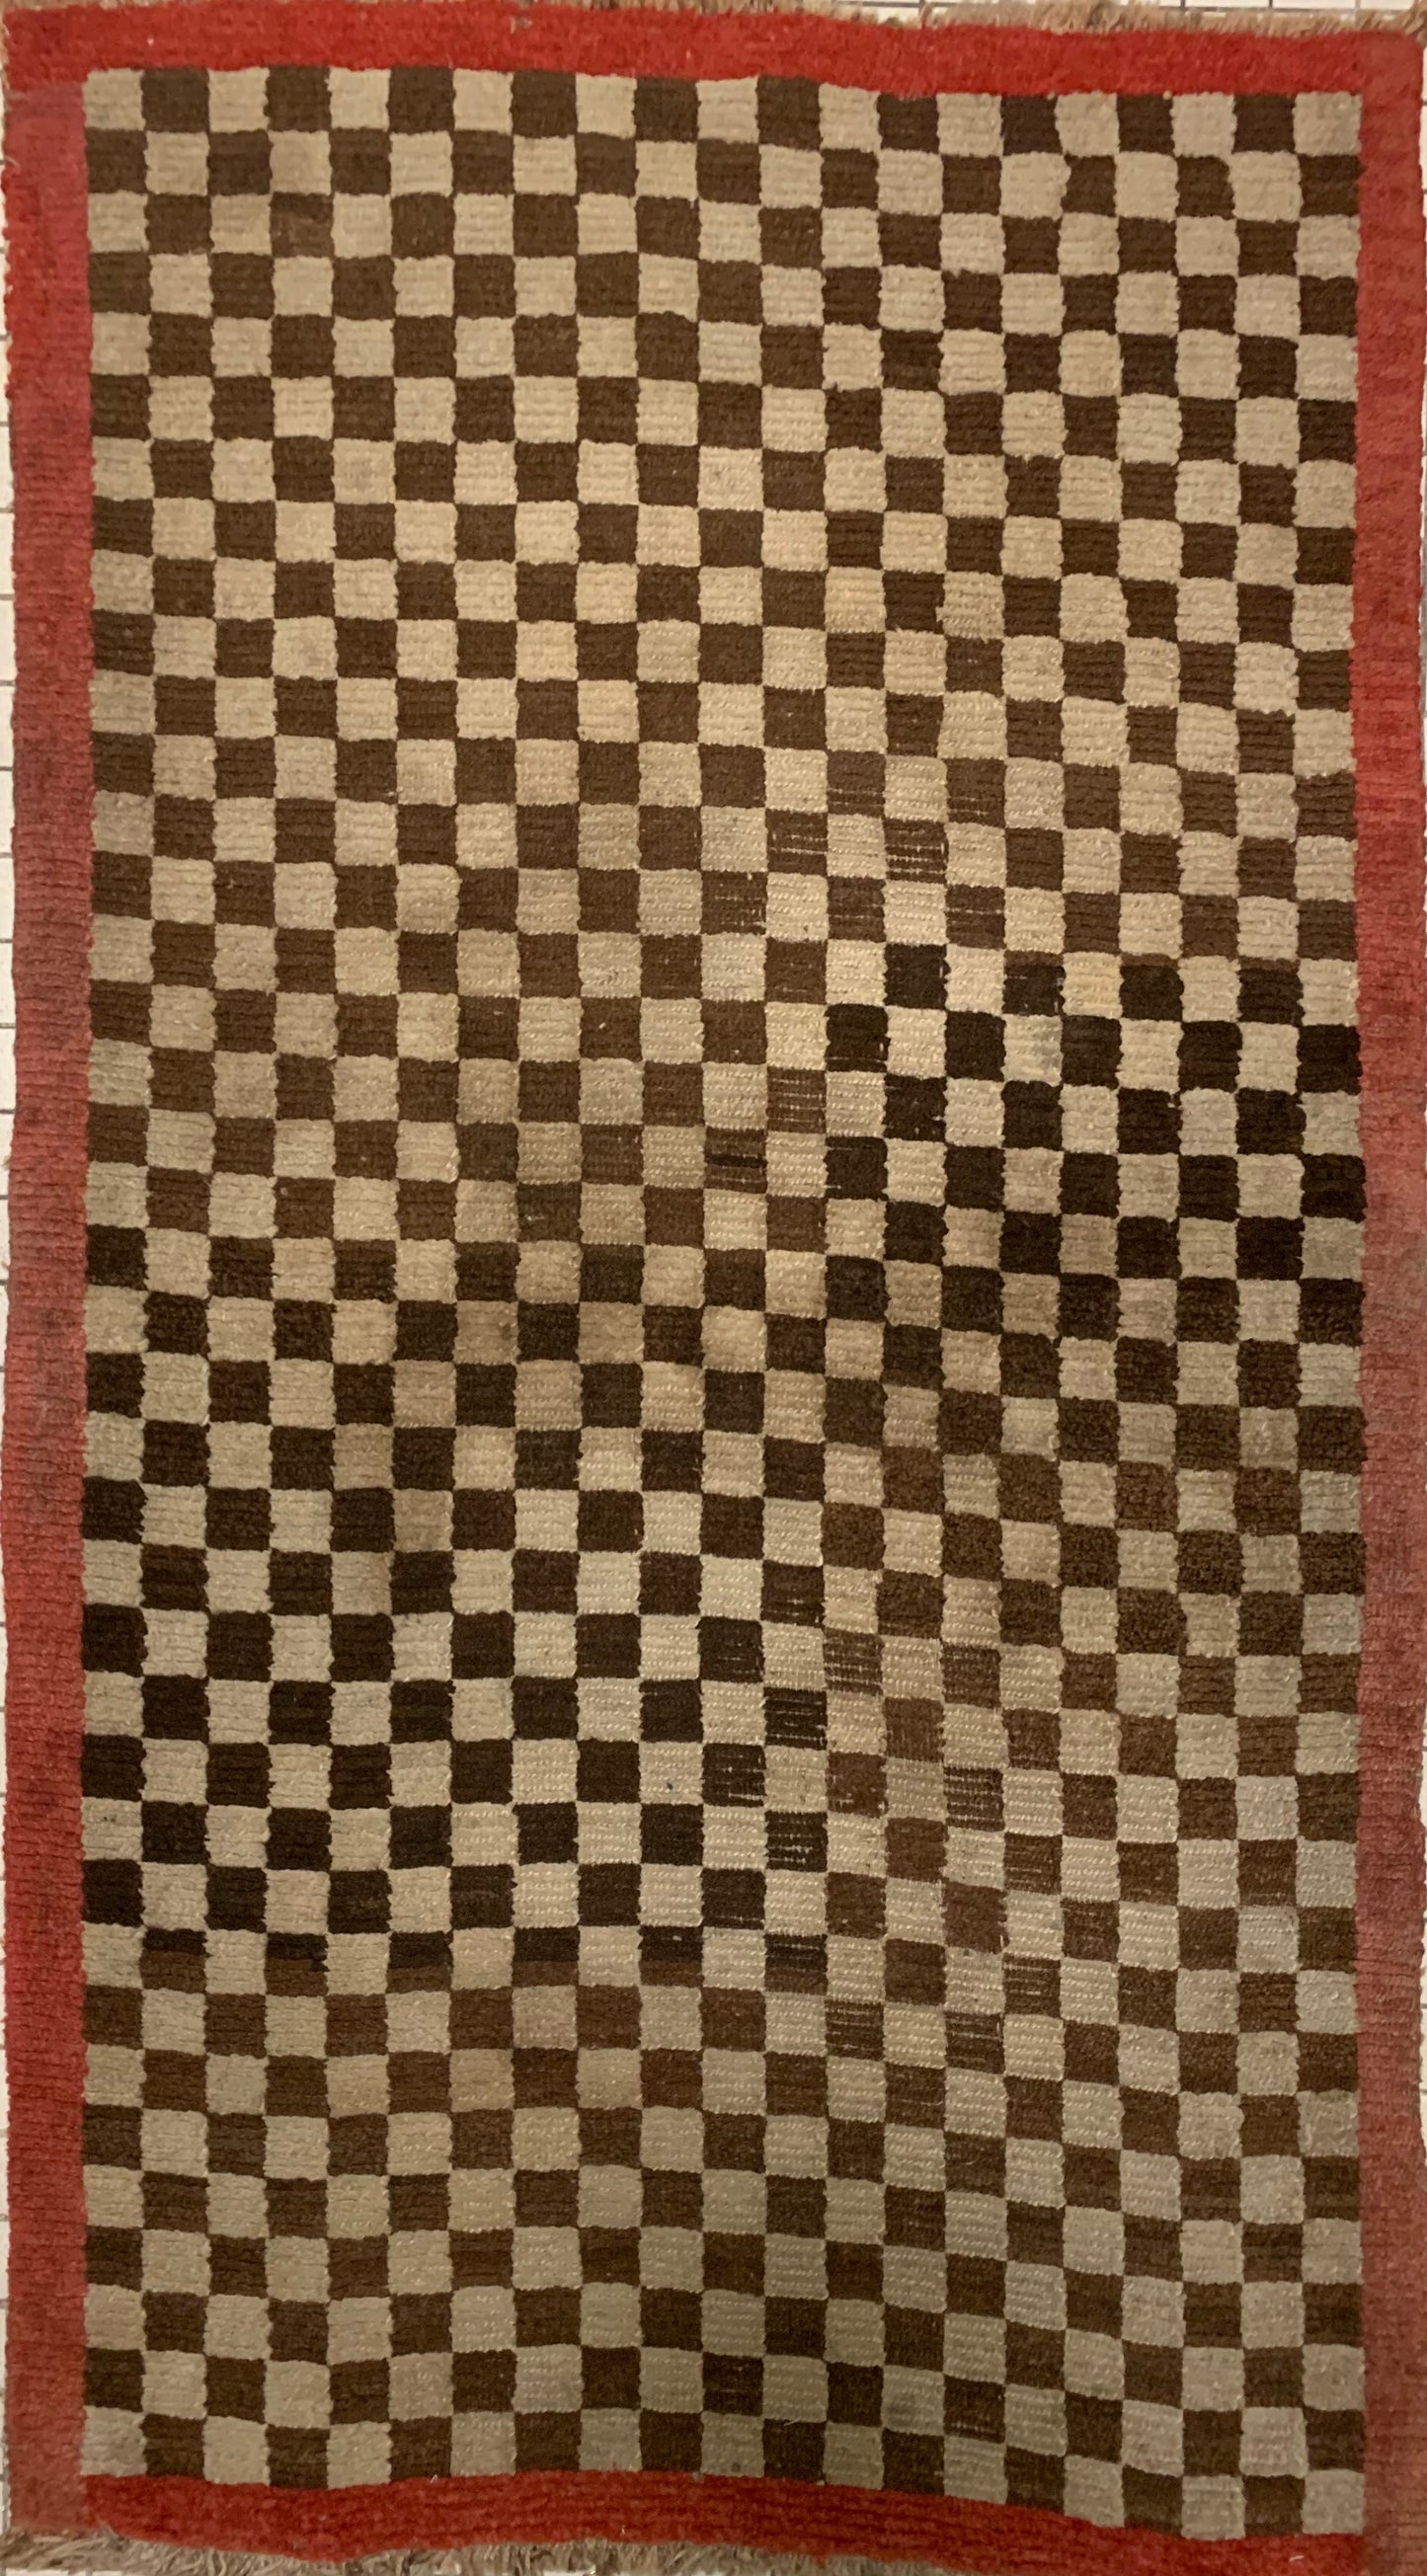 An antique Tibetan checkerboard rug